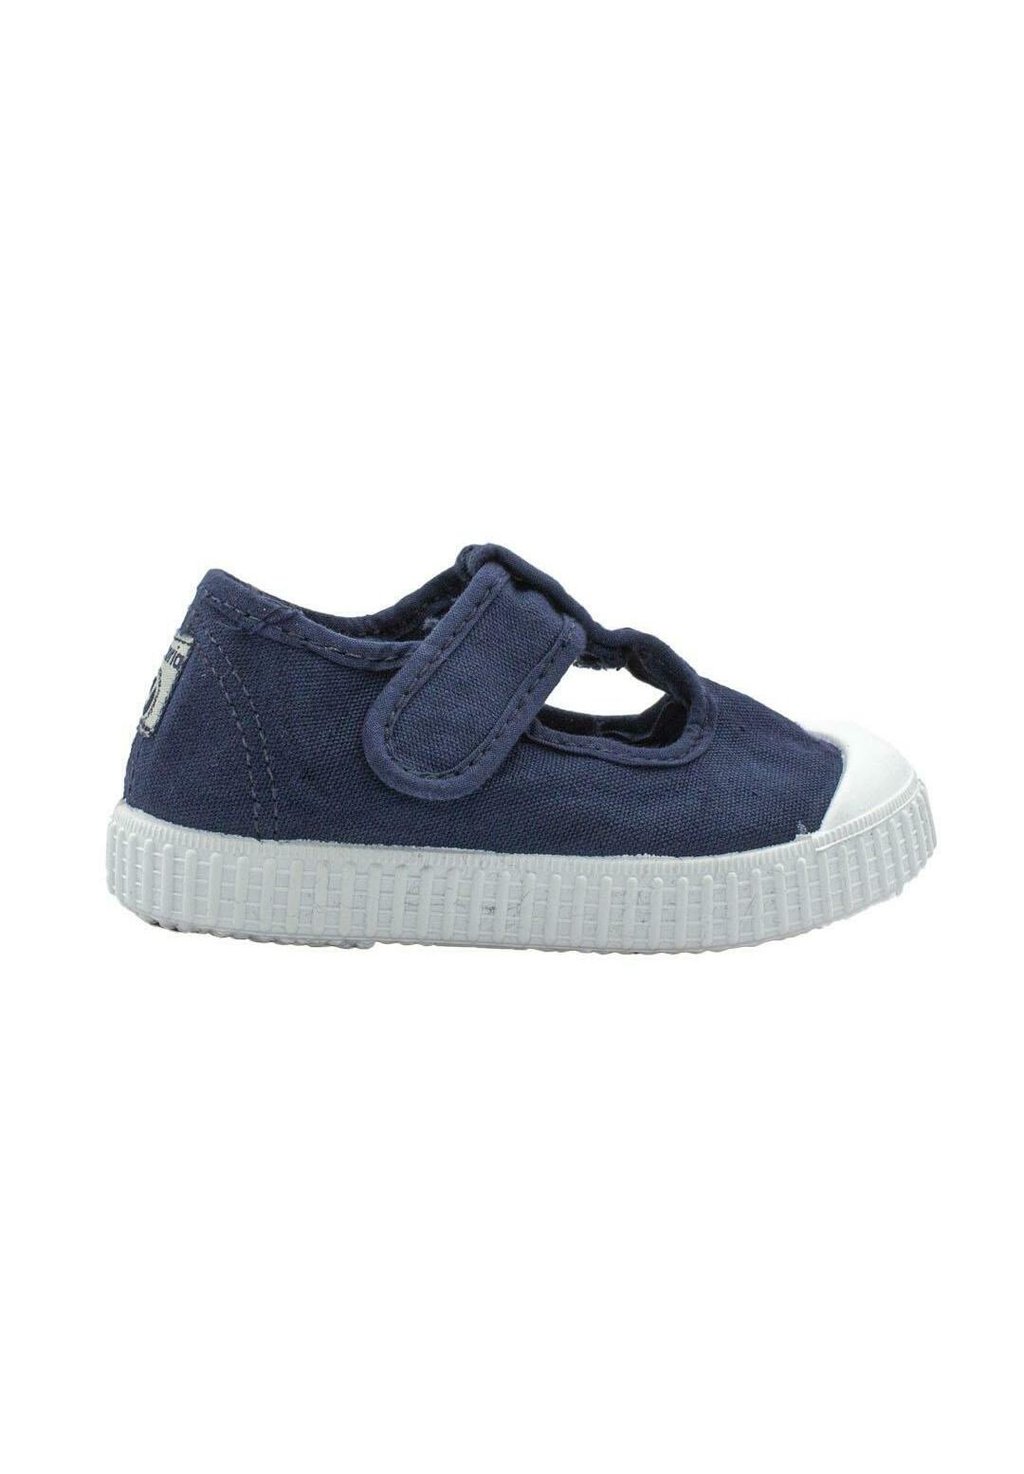 Кроссовки низкие LONA MARINO Victoria Shoes, цвет azul низкие кроссовки zapatillas mtng цвет azul marino